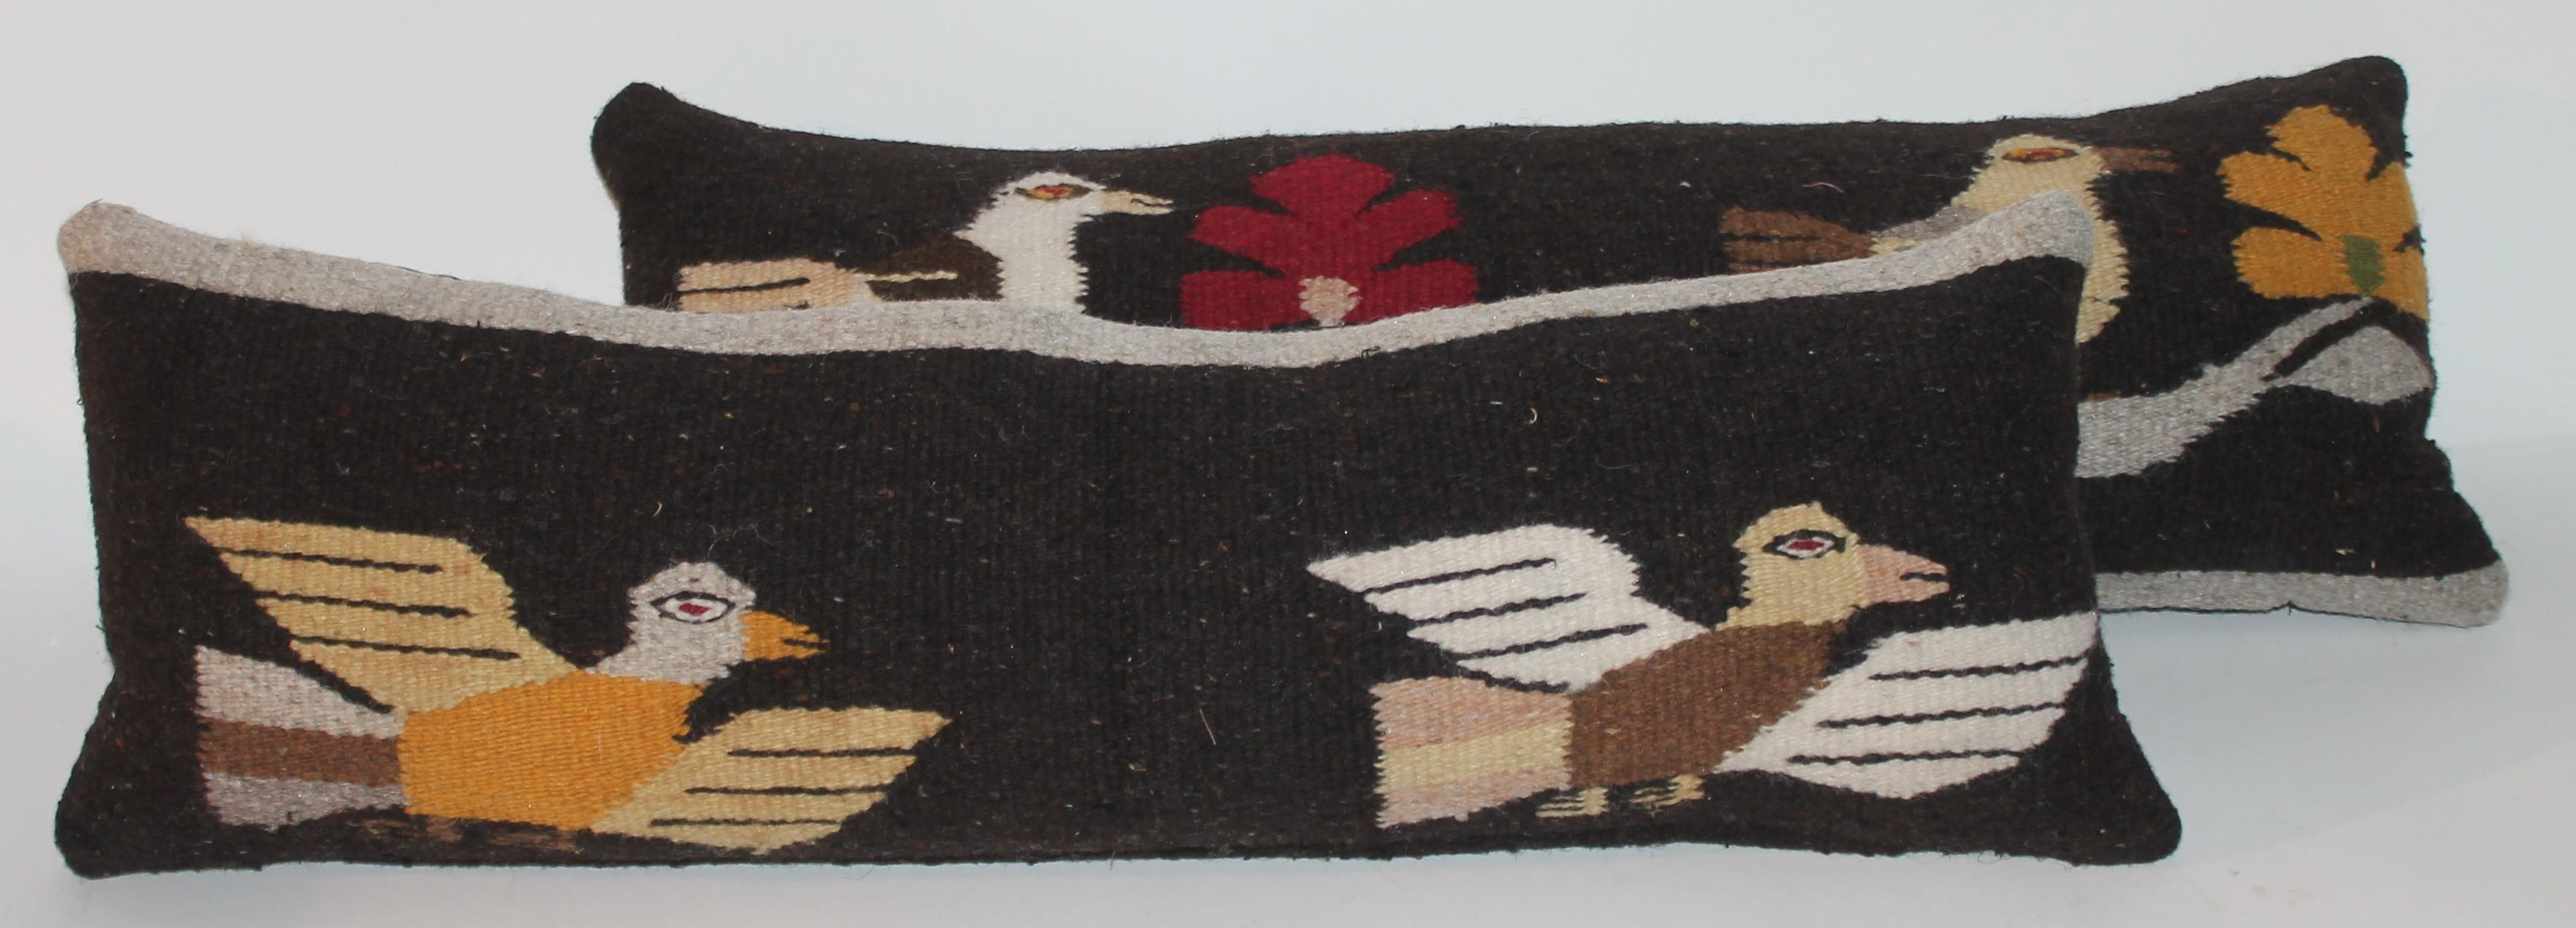 American Mexican / Indian Bird Weaving Pillows, 2